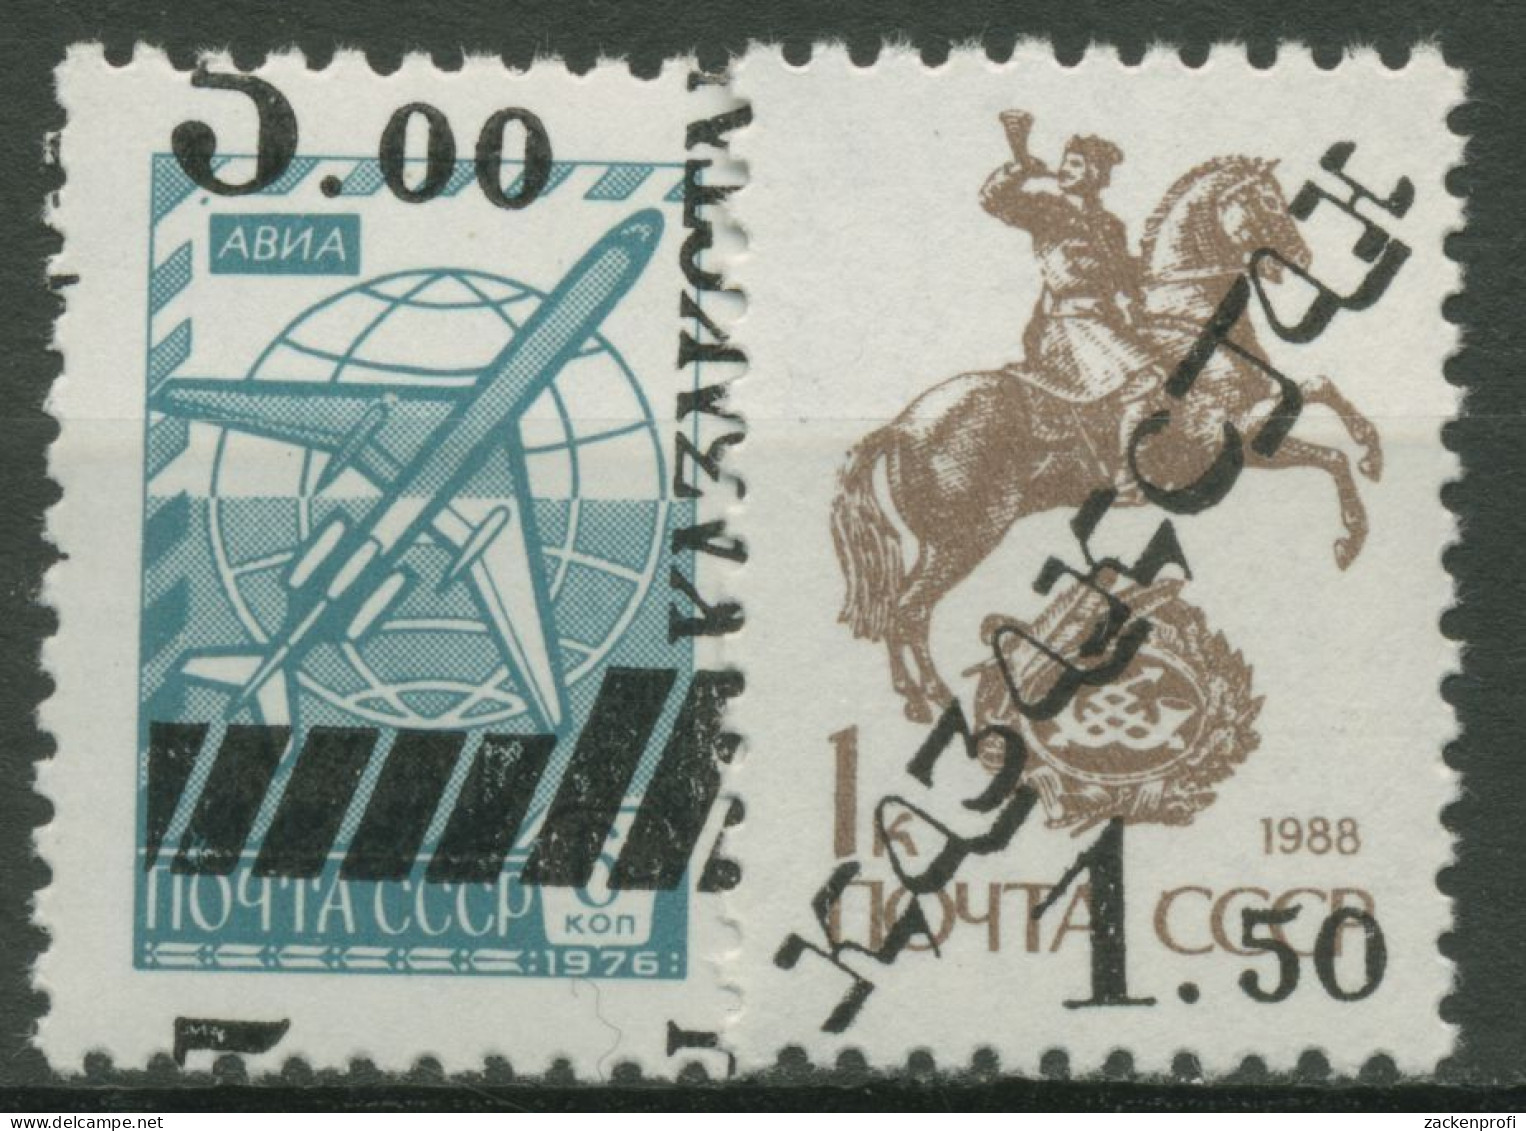 Kasachstan 1992 MiNr.6025+4633 V Sowjetunion Mit Aufdruck 15/16 Postfrisch - Kazajstán